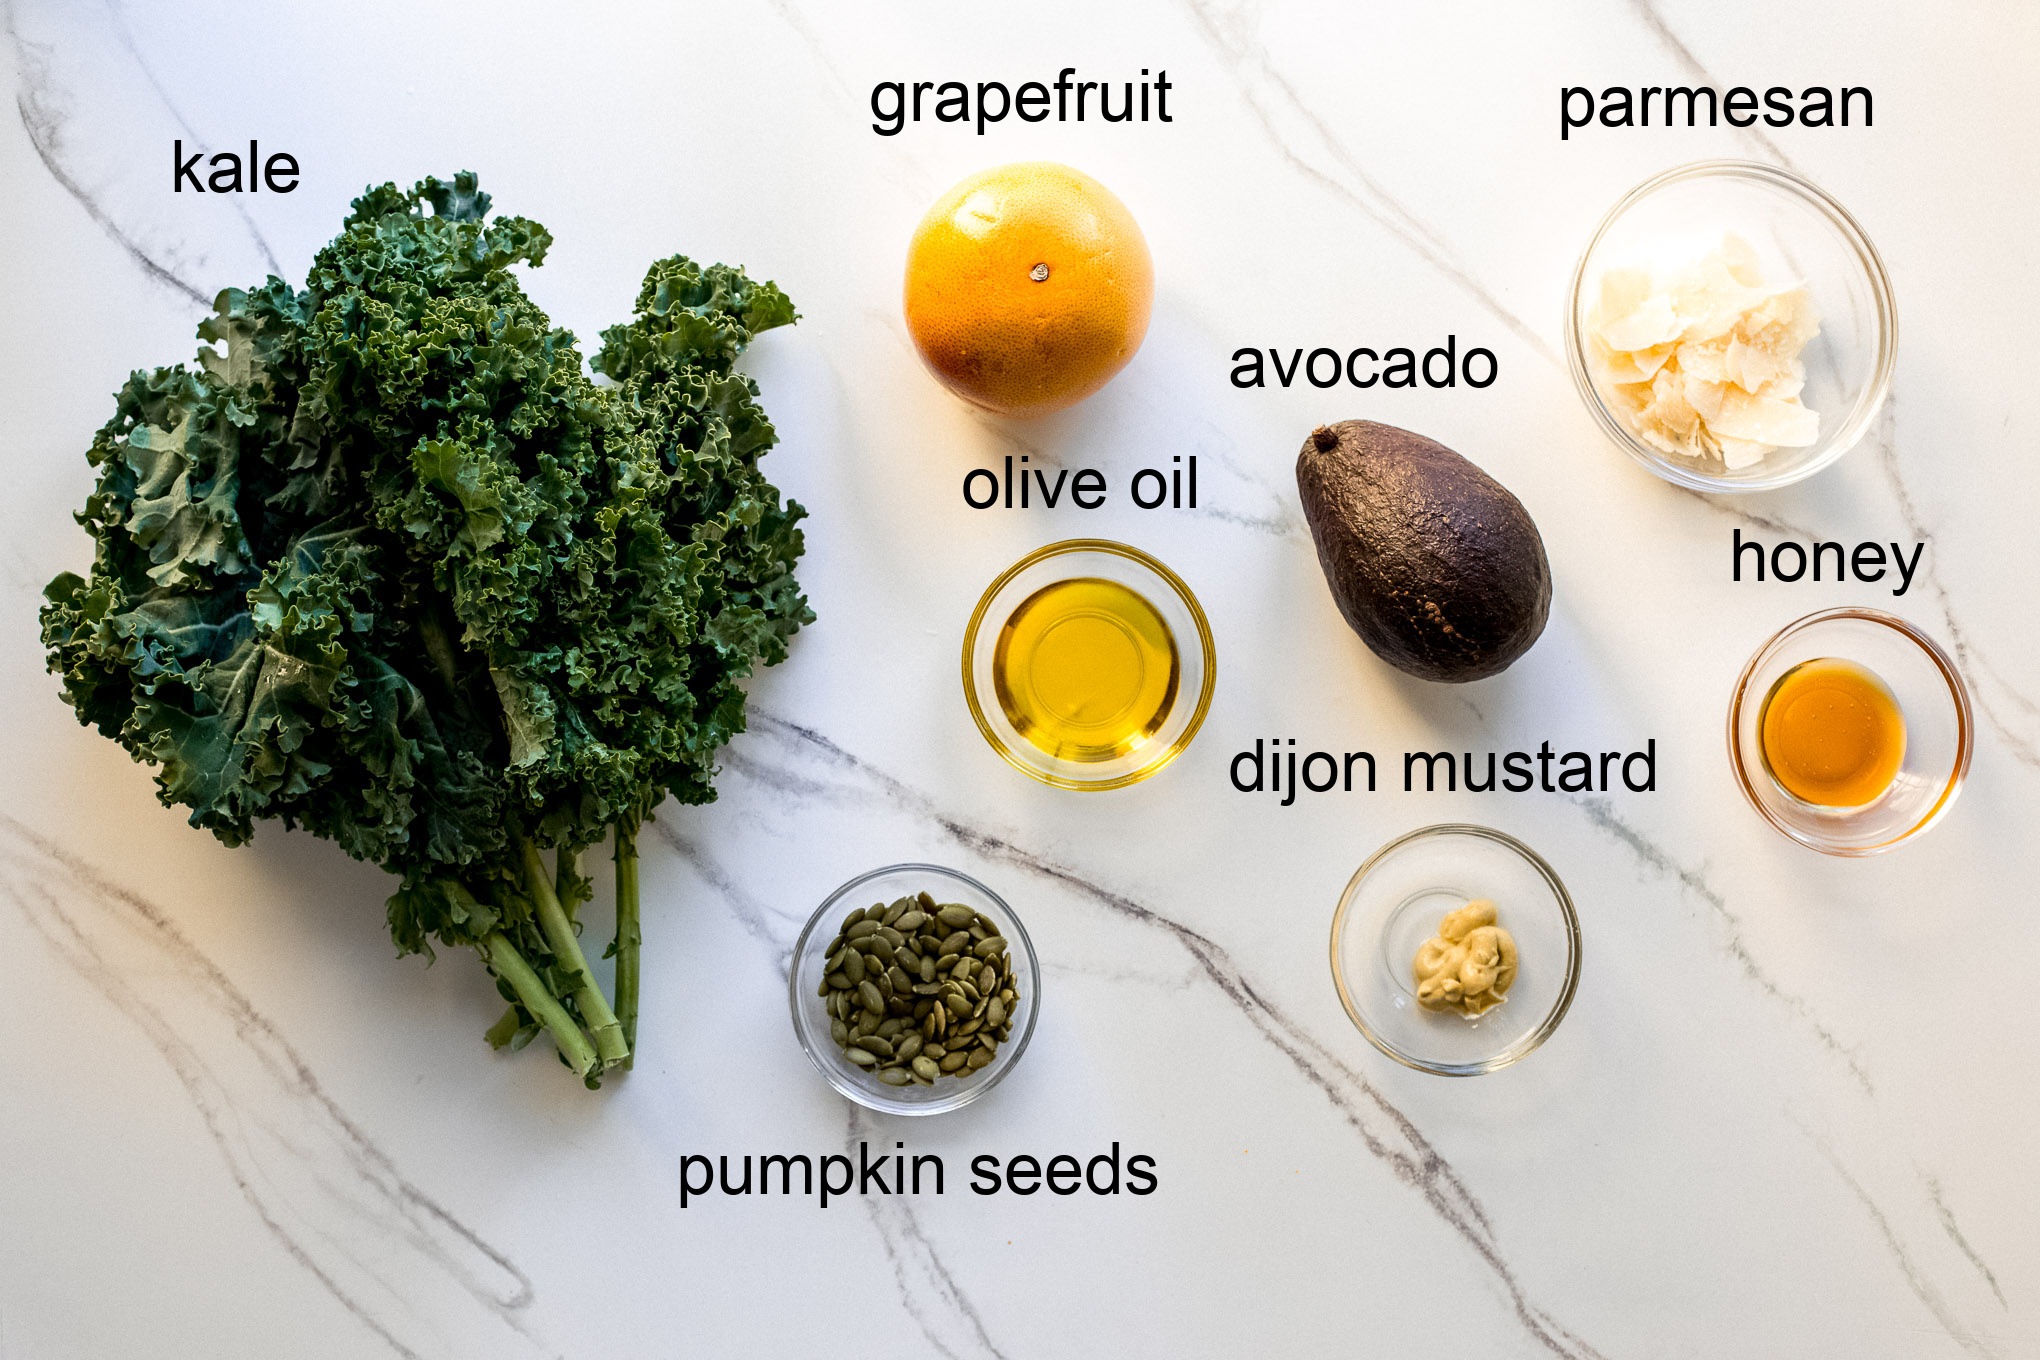 ingredients for kale grapefruit salad